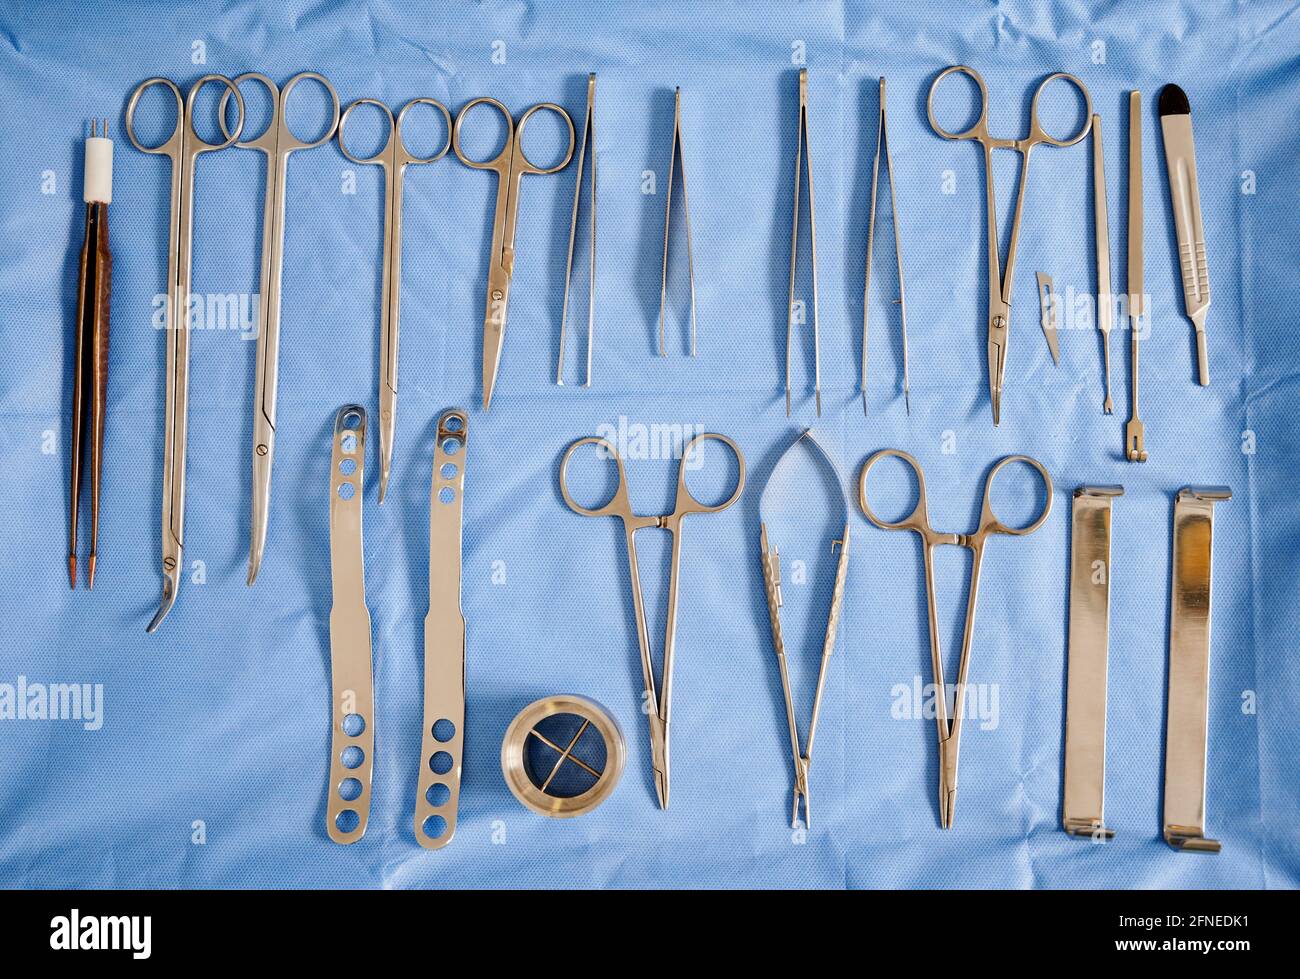 Jeu de divers outils en acier inoxydable pour la chirurgie plastique :  ciseaux courbes, pinces, scalpel et pinces à épiler en salle d'opération.  Concept de chirurgie esthétique, instruments médicaux et préparation. Vue